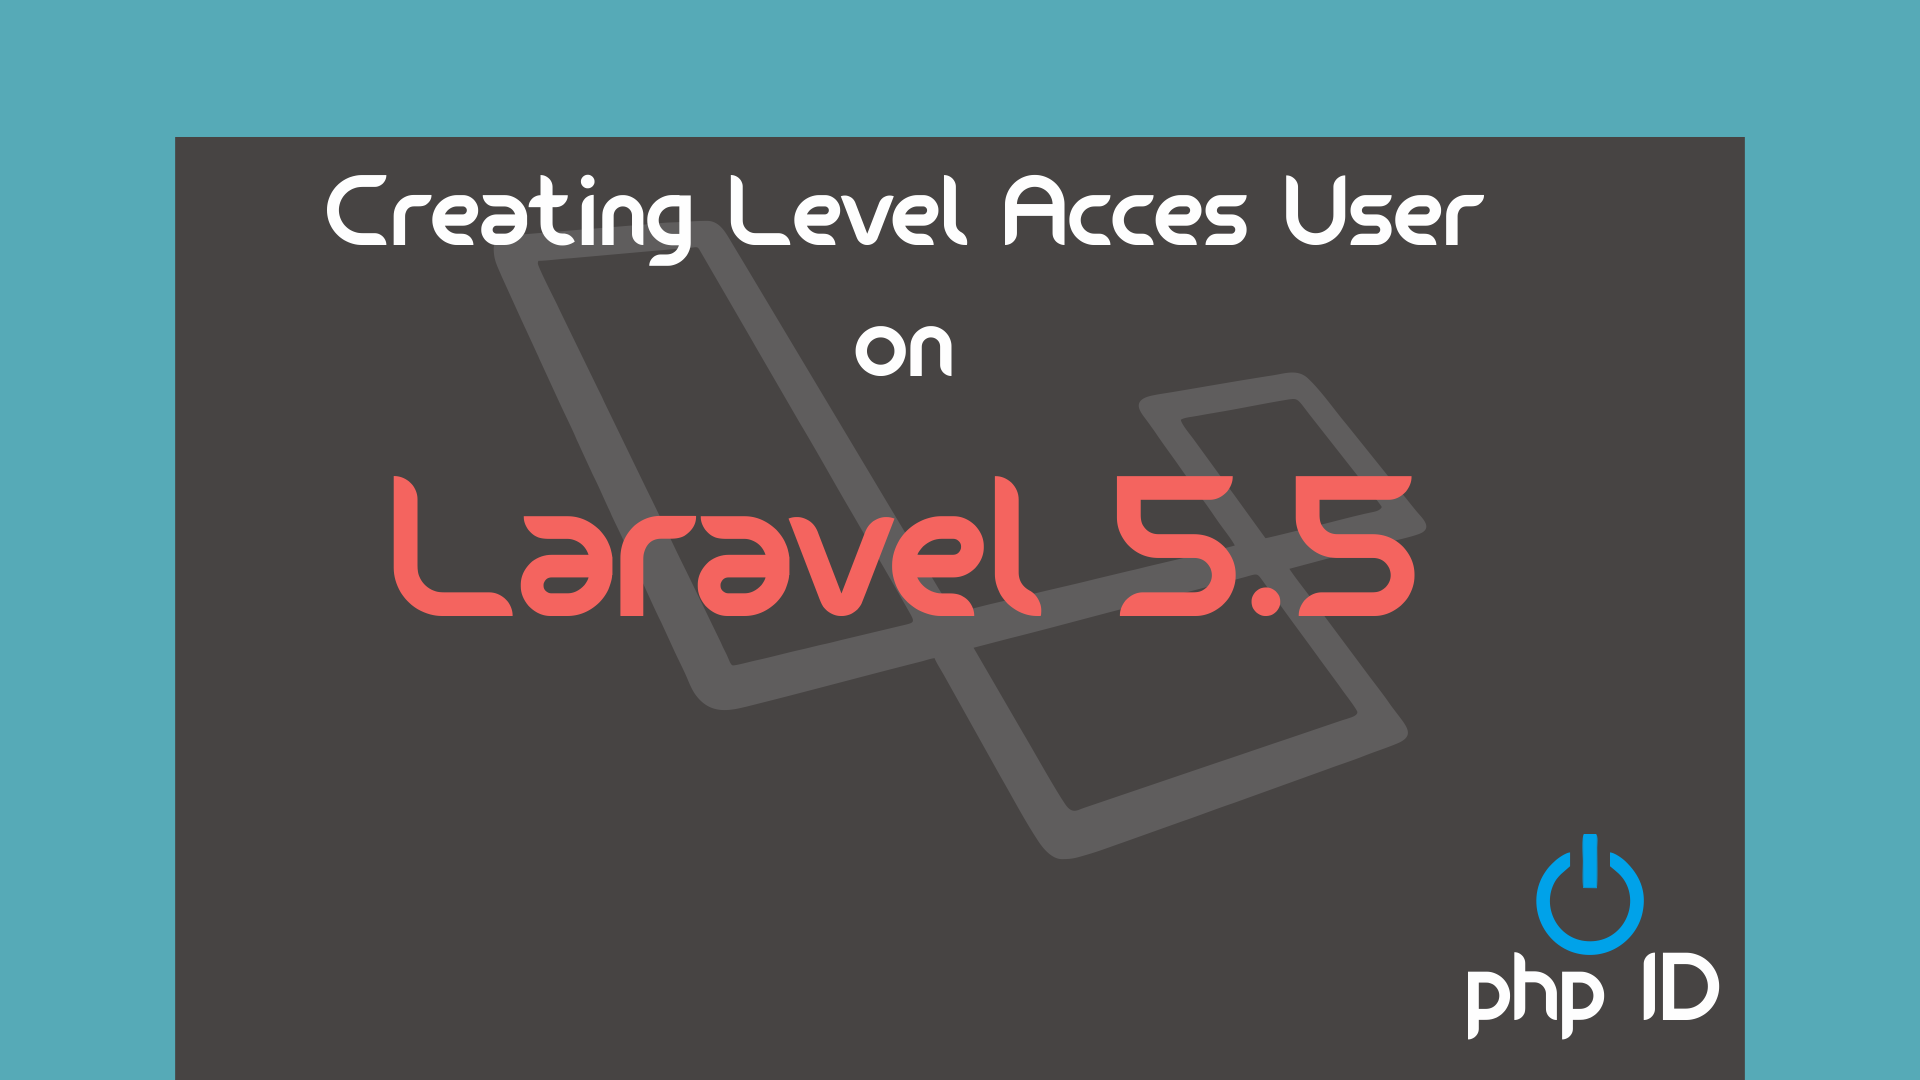 Membuat Level Akses User Di Laravel 55 Onphpid 4881